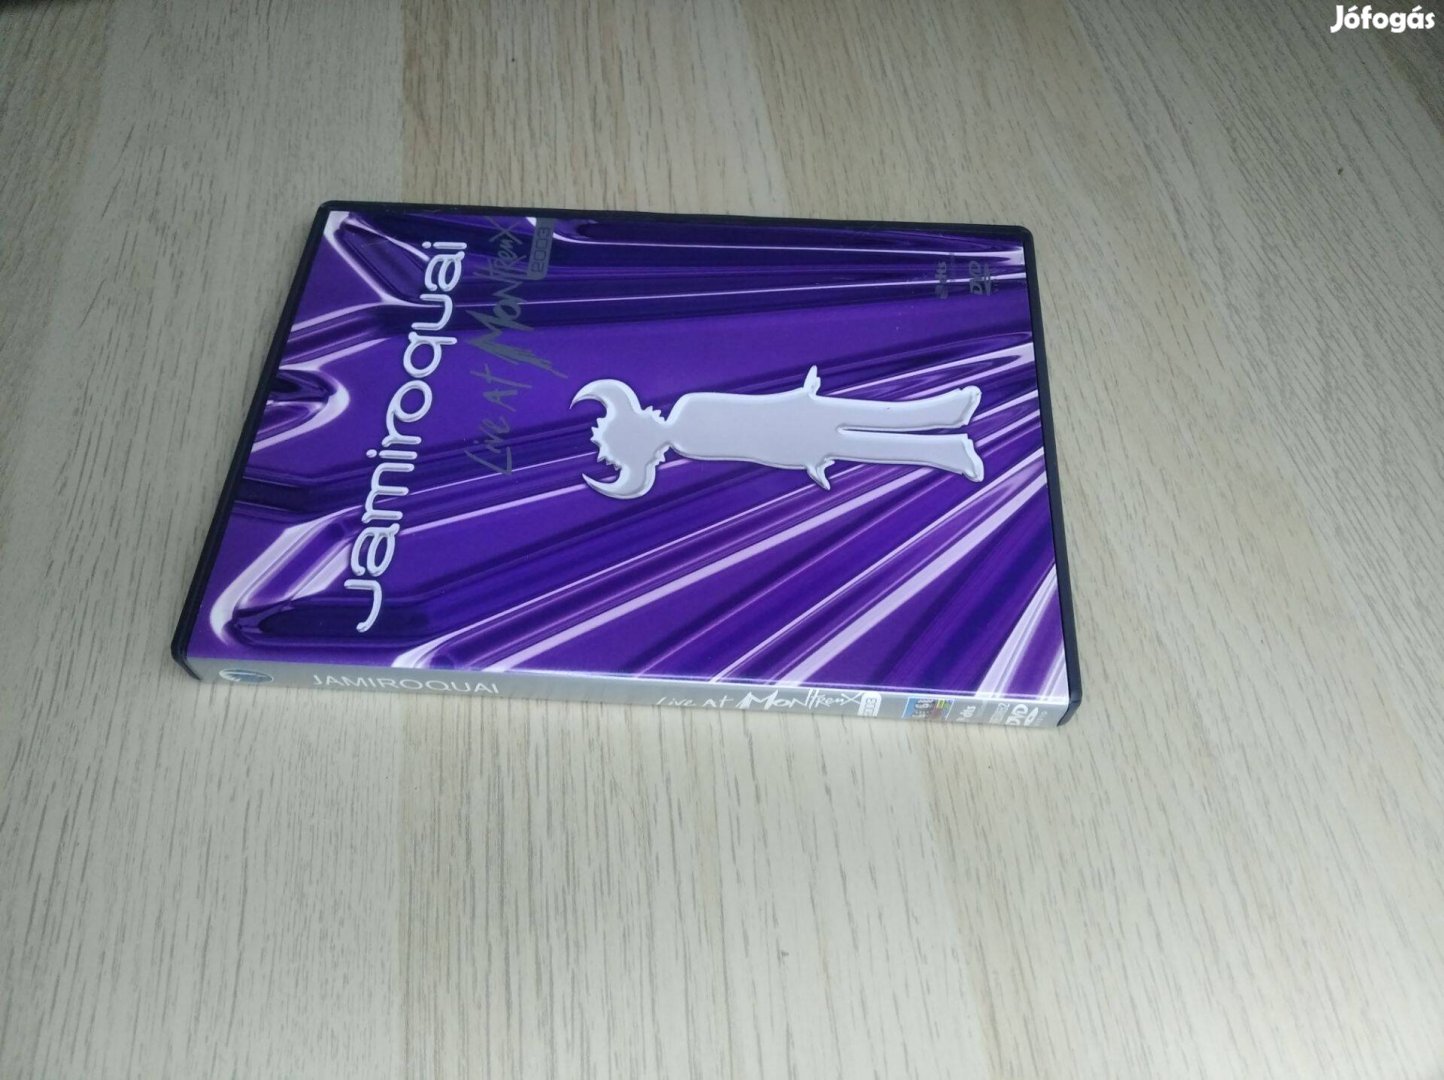 Jamiroquai - Live At Montreux 2003 / DVD